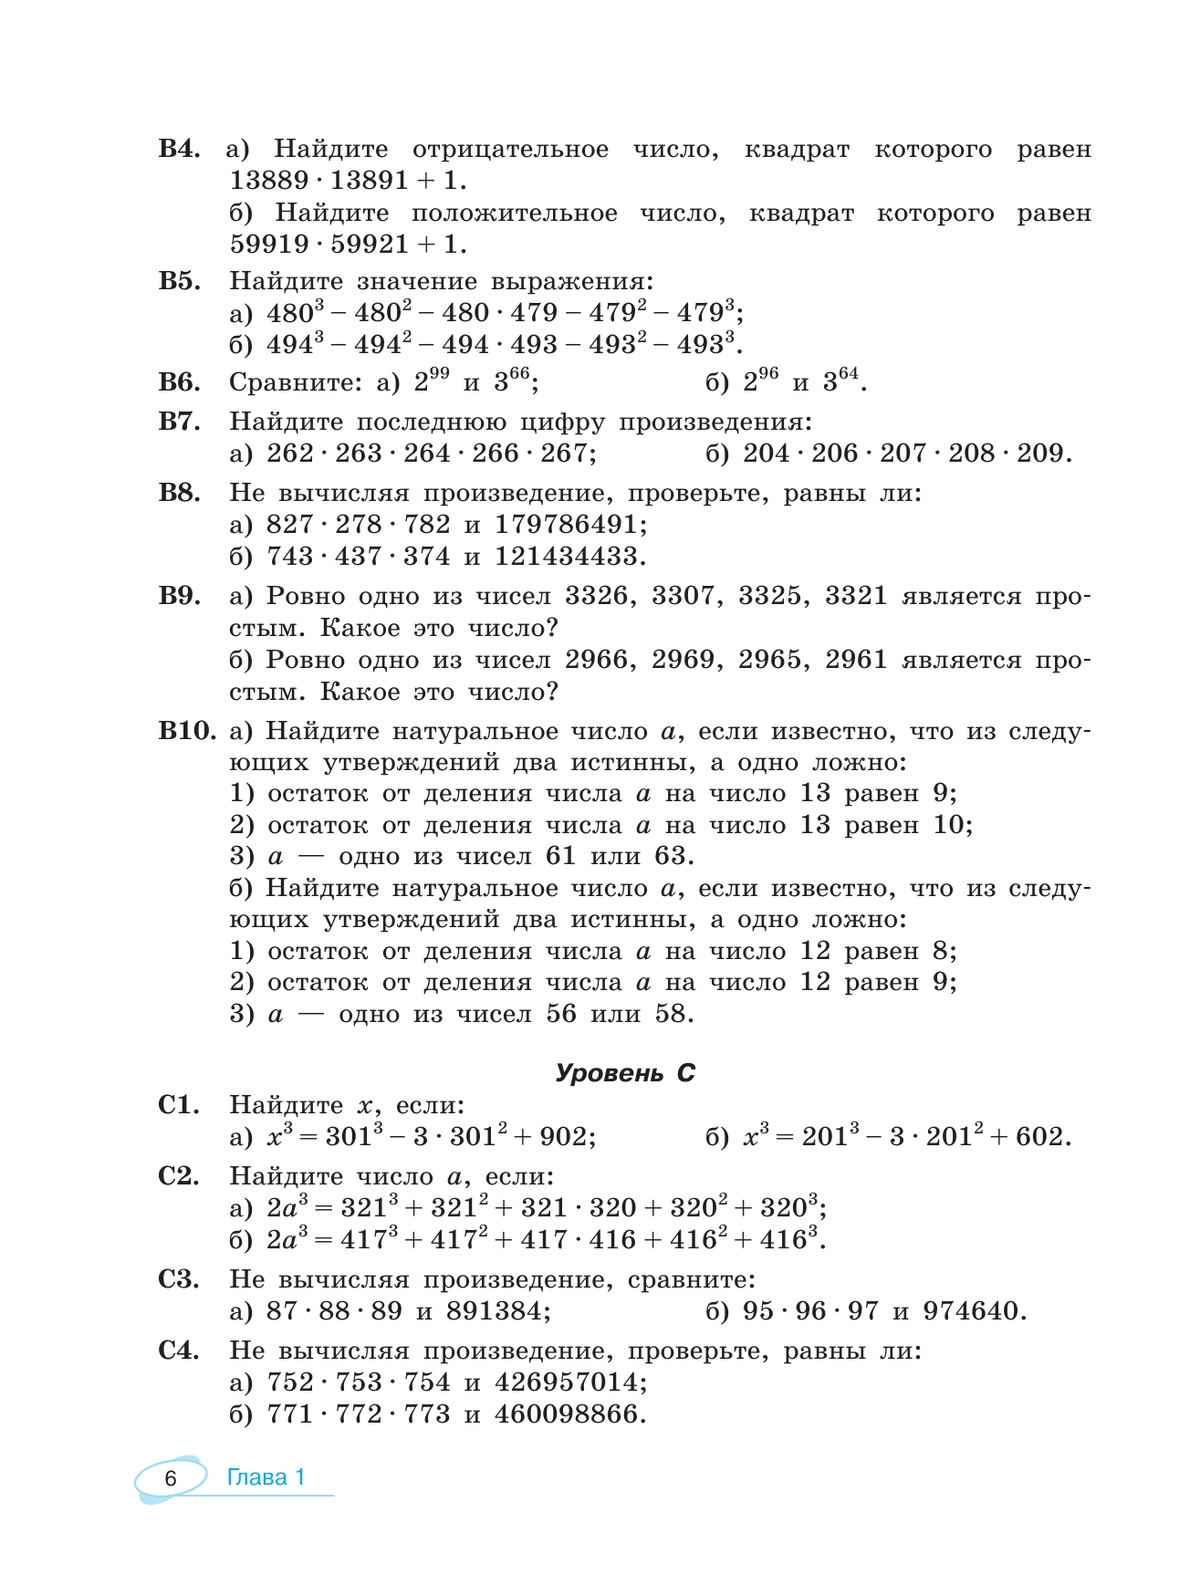 Алгебра и начала математического анализа. Универсальный многоуровневый сборник задач. 10-11 классы 9